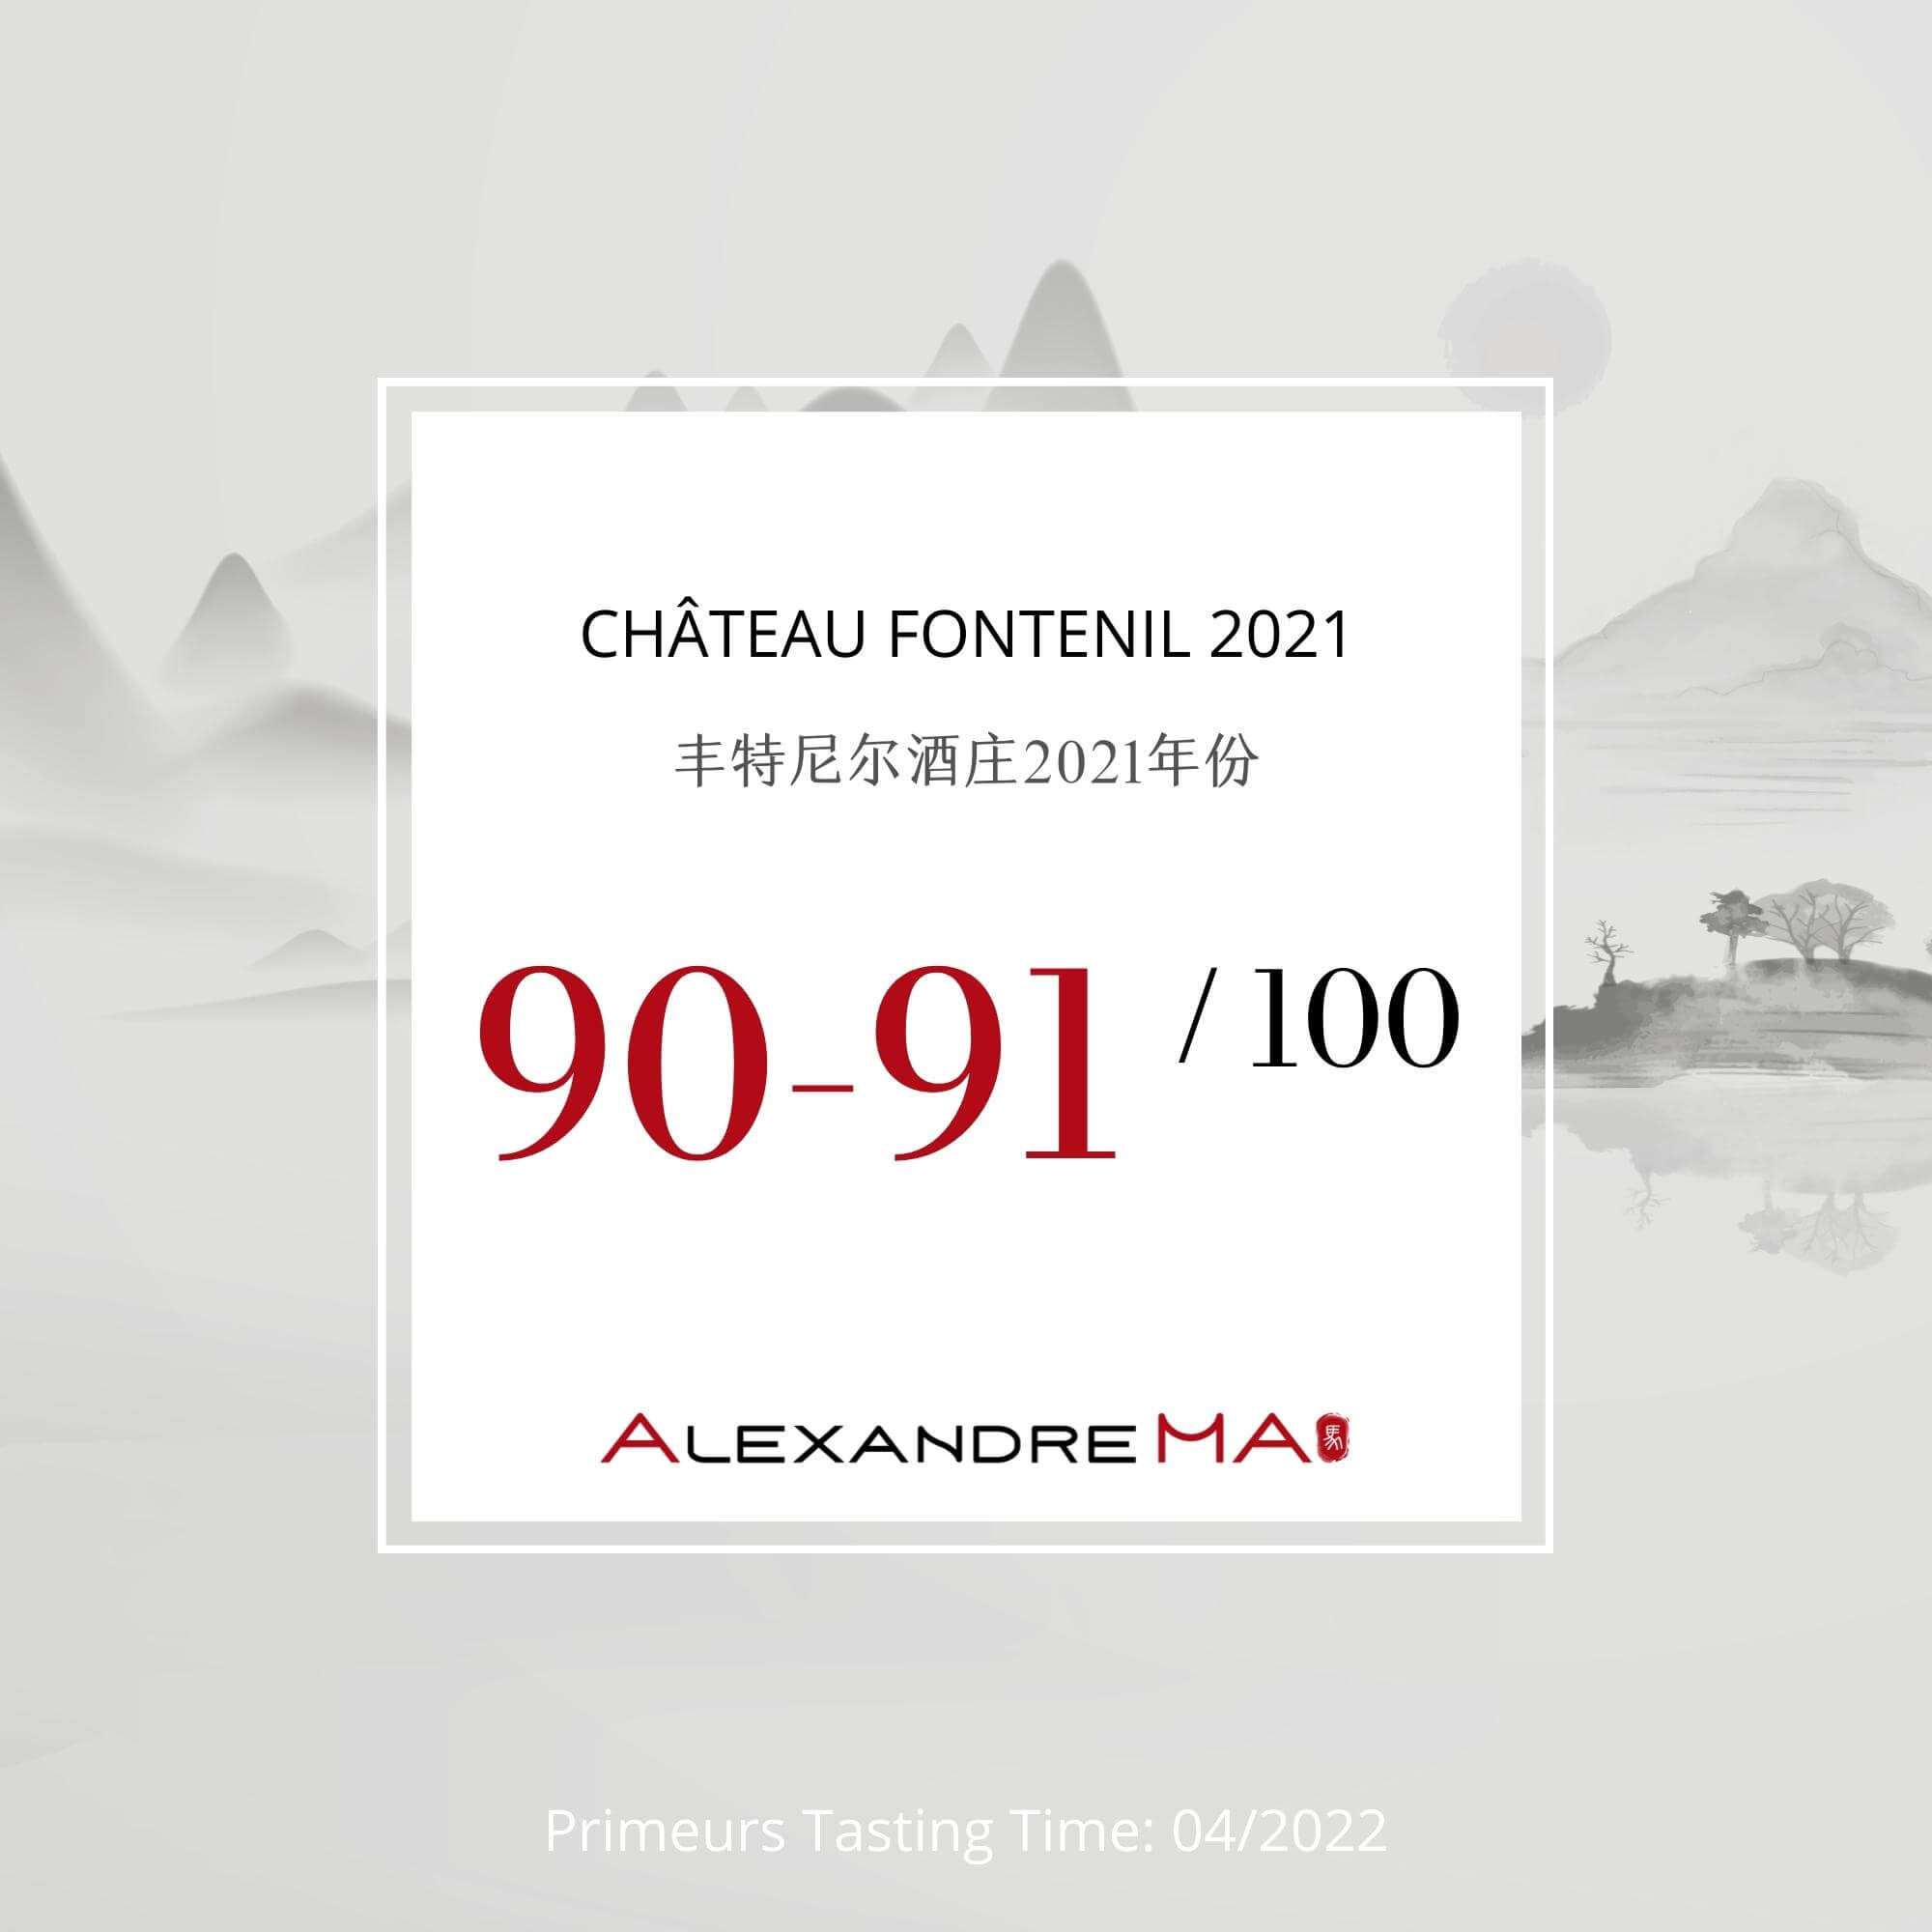 Château Fontenil 2021 - Alexandre MA